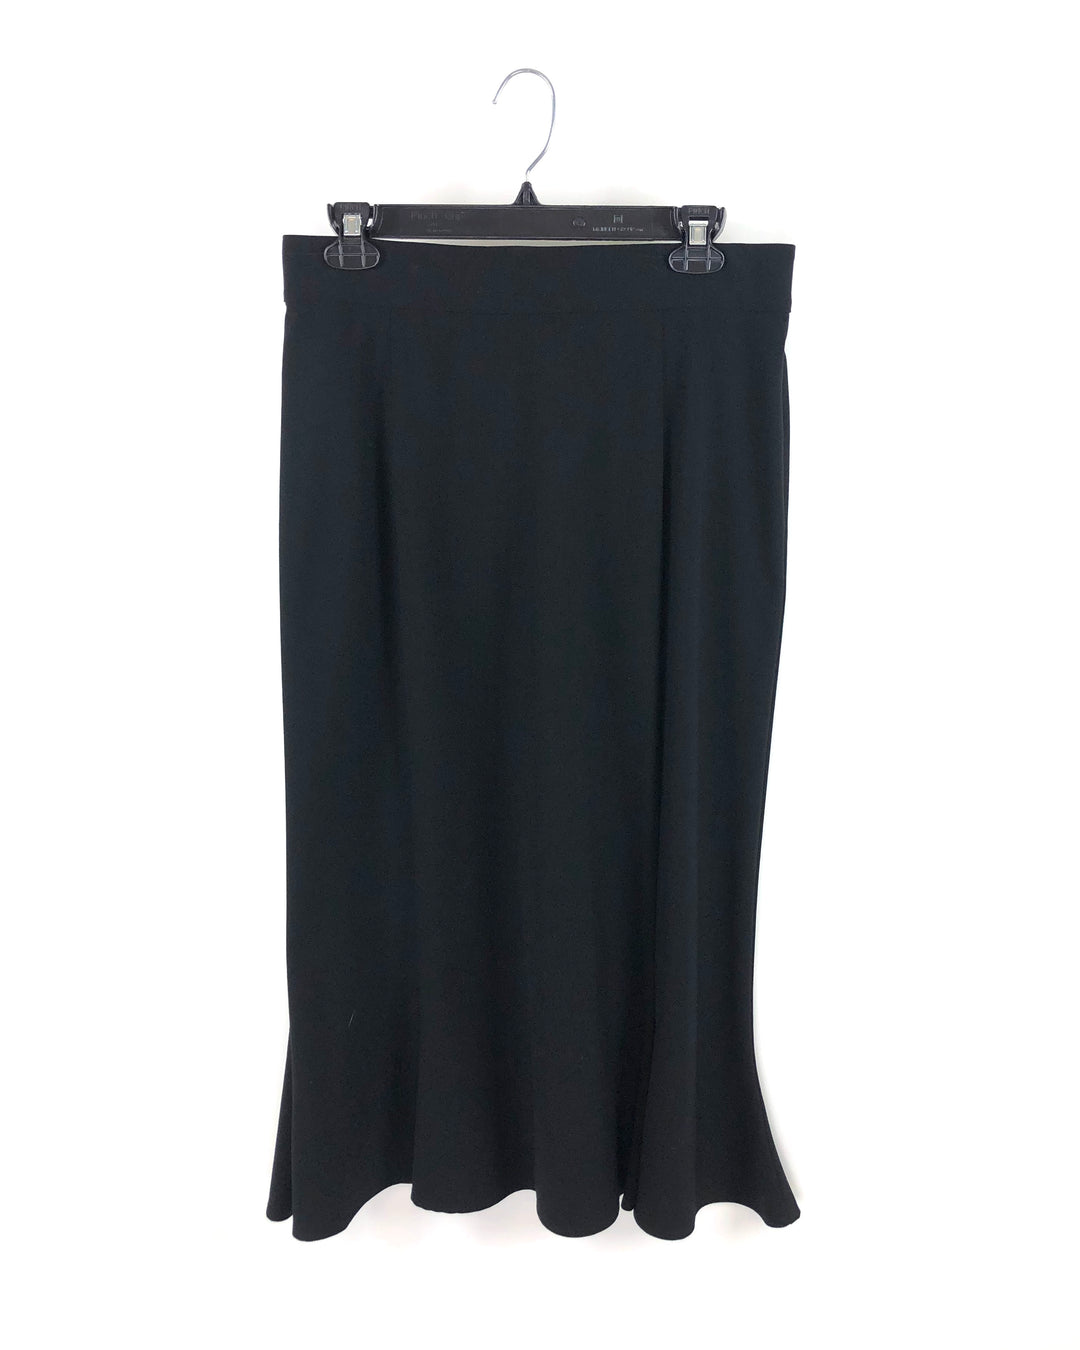 Petite Long Black Skirt- Size 8 Petite